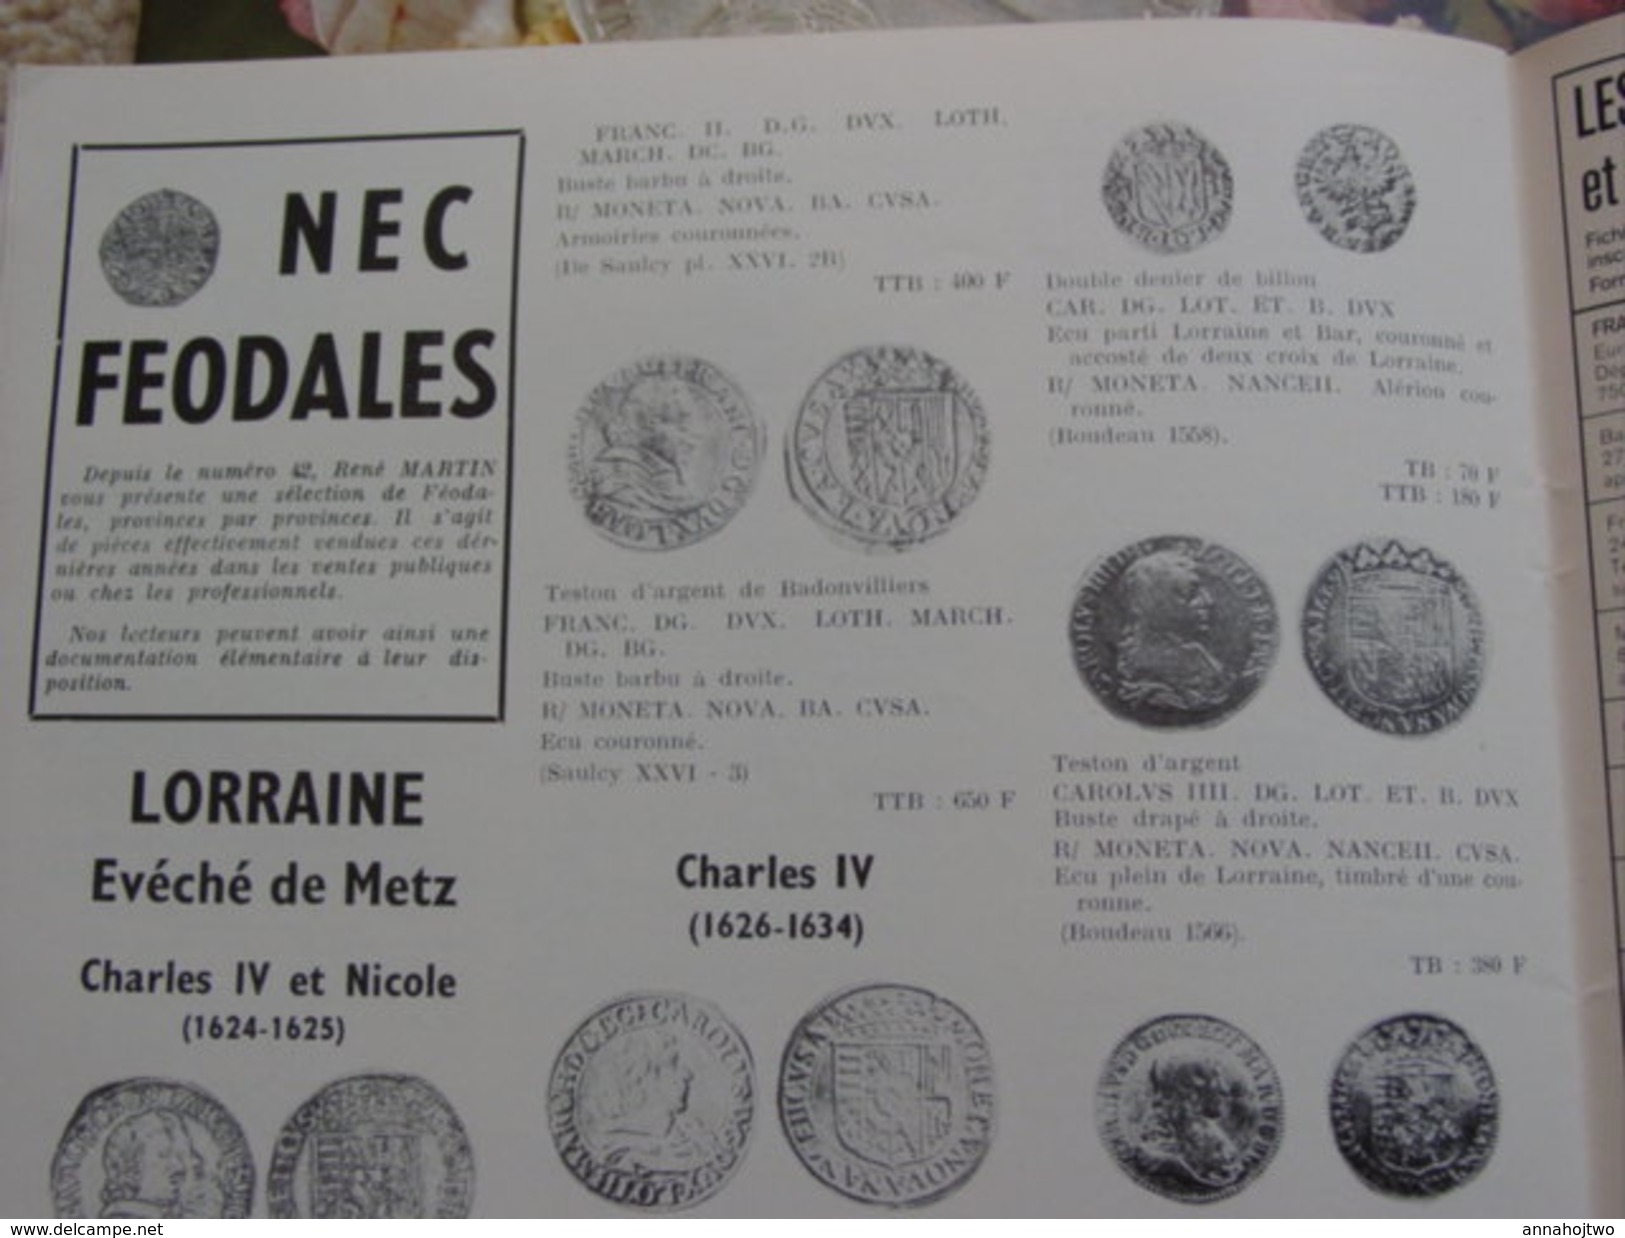 Lot de 17 N° "NUMISMATIQUE & CHANGE" étud.div:"Ateliers royaux,LouisXIV,Rome:Claude,Néron,Féodales,Numis.allem.avt 1871"